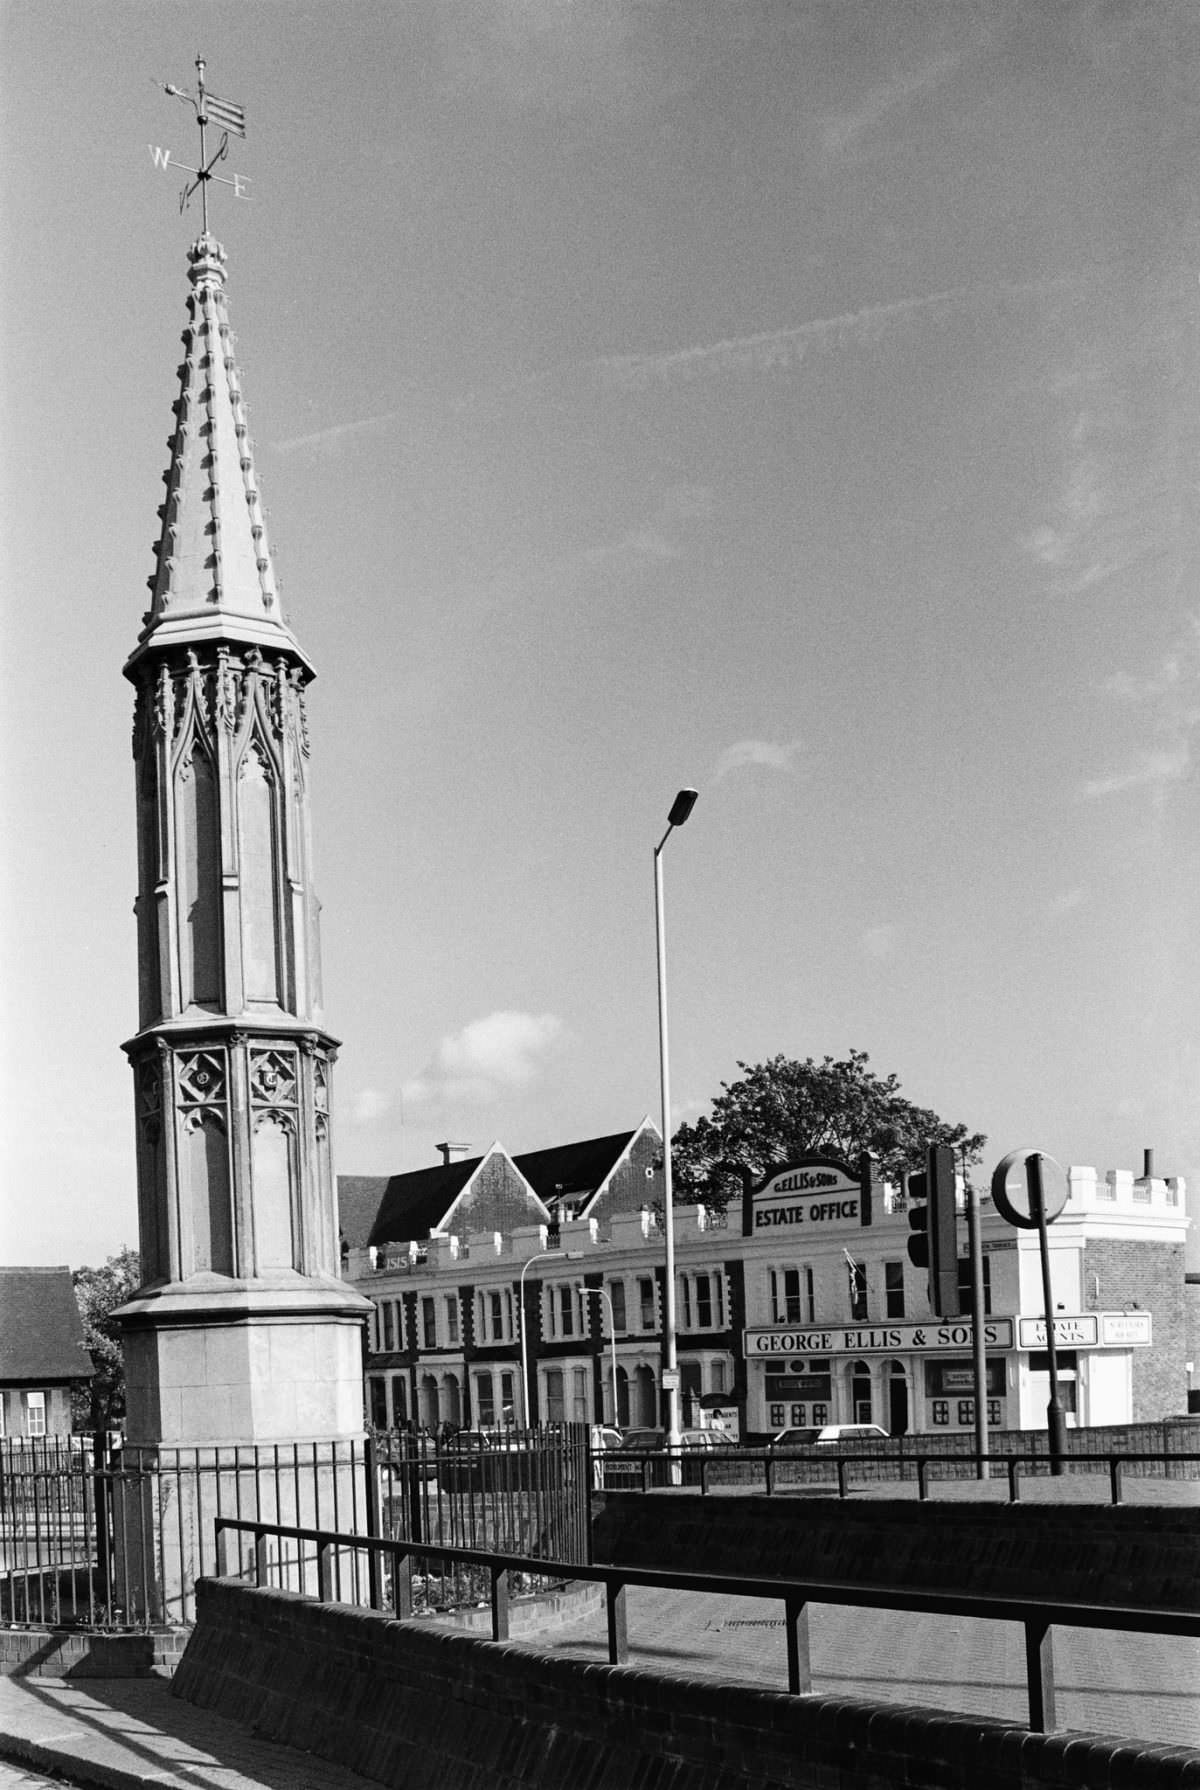 Tottenham High Cross, High Rd, Tottenham, Haringey 1989